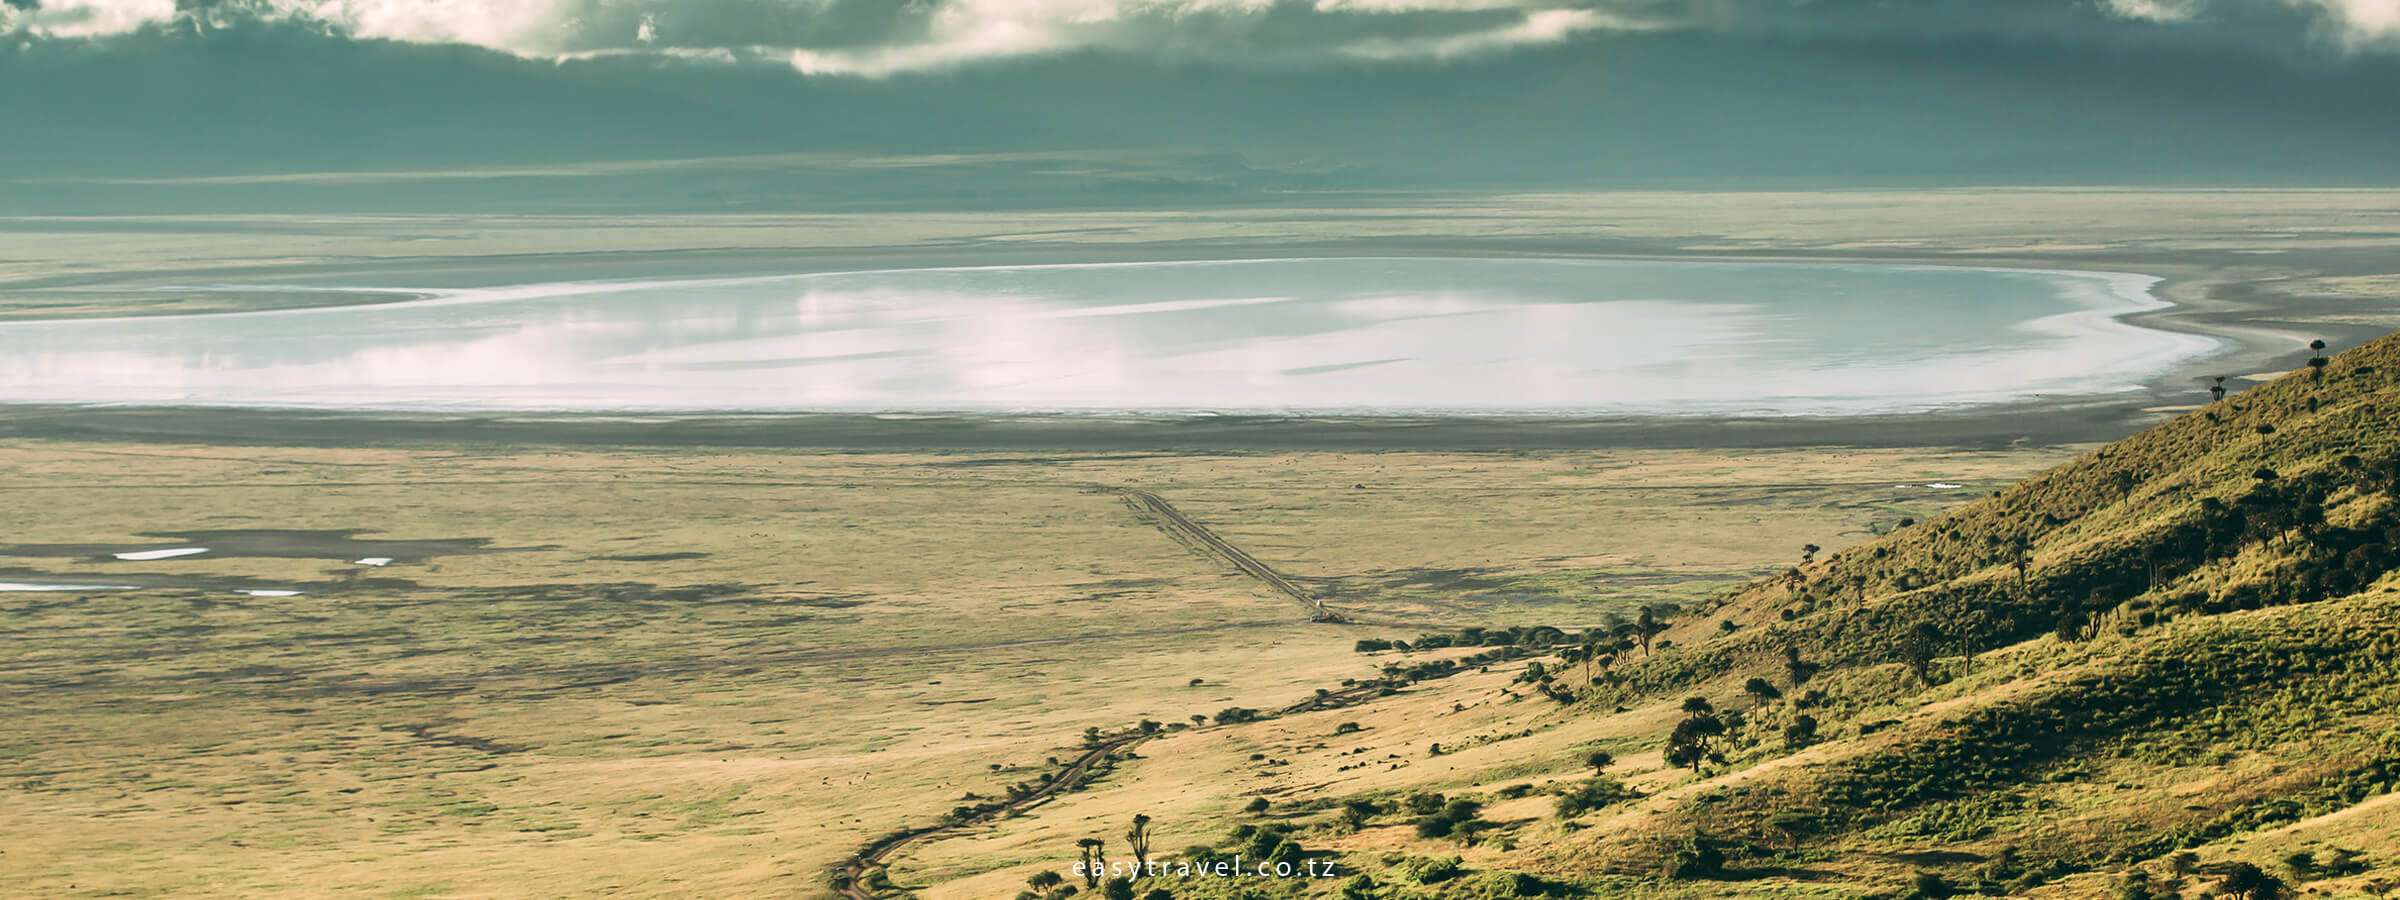 Tanzania - mt kili day tour 2 - ngorongoro crater day tour